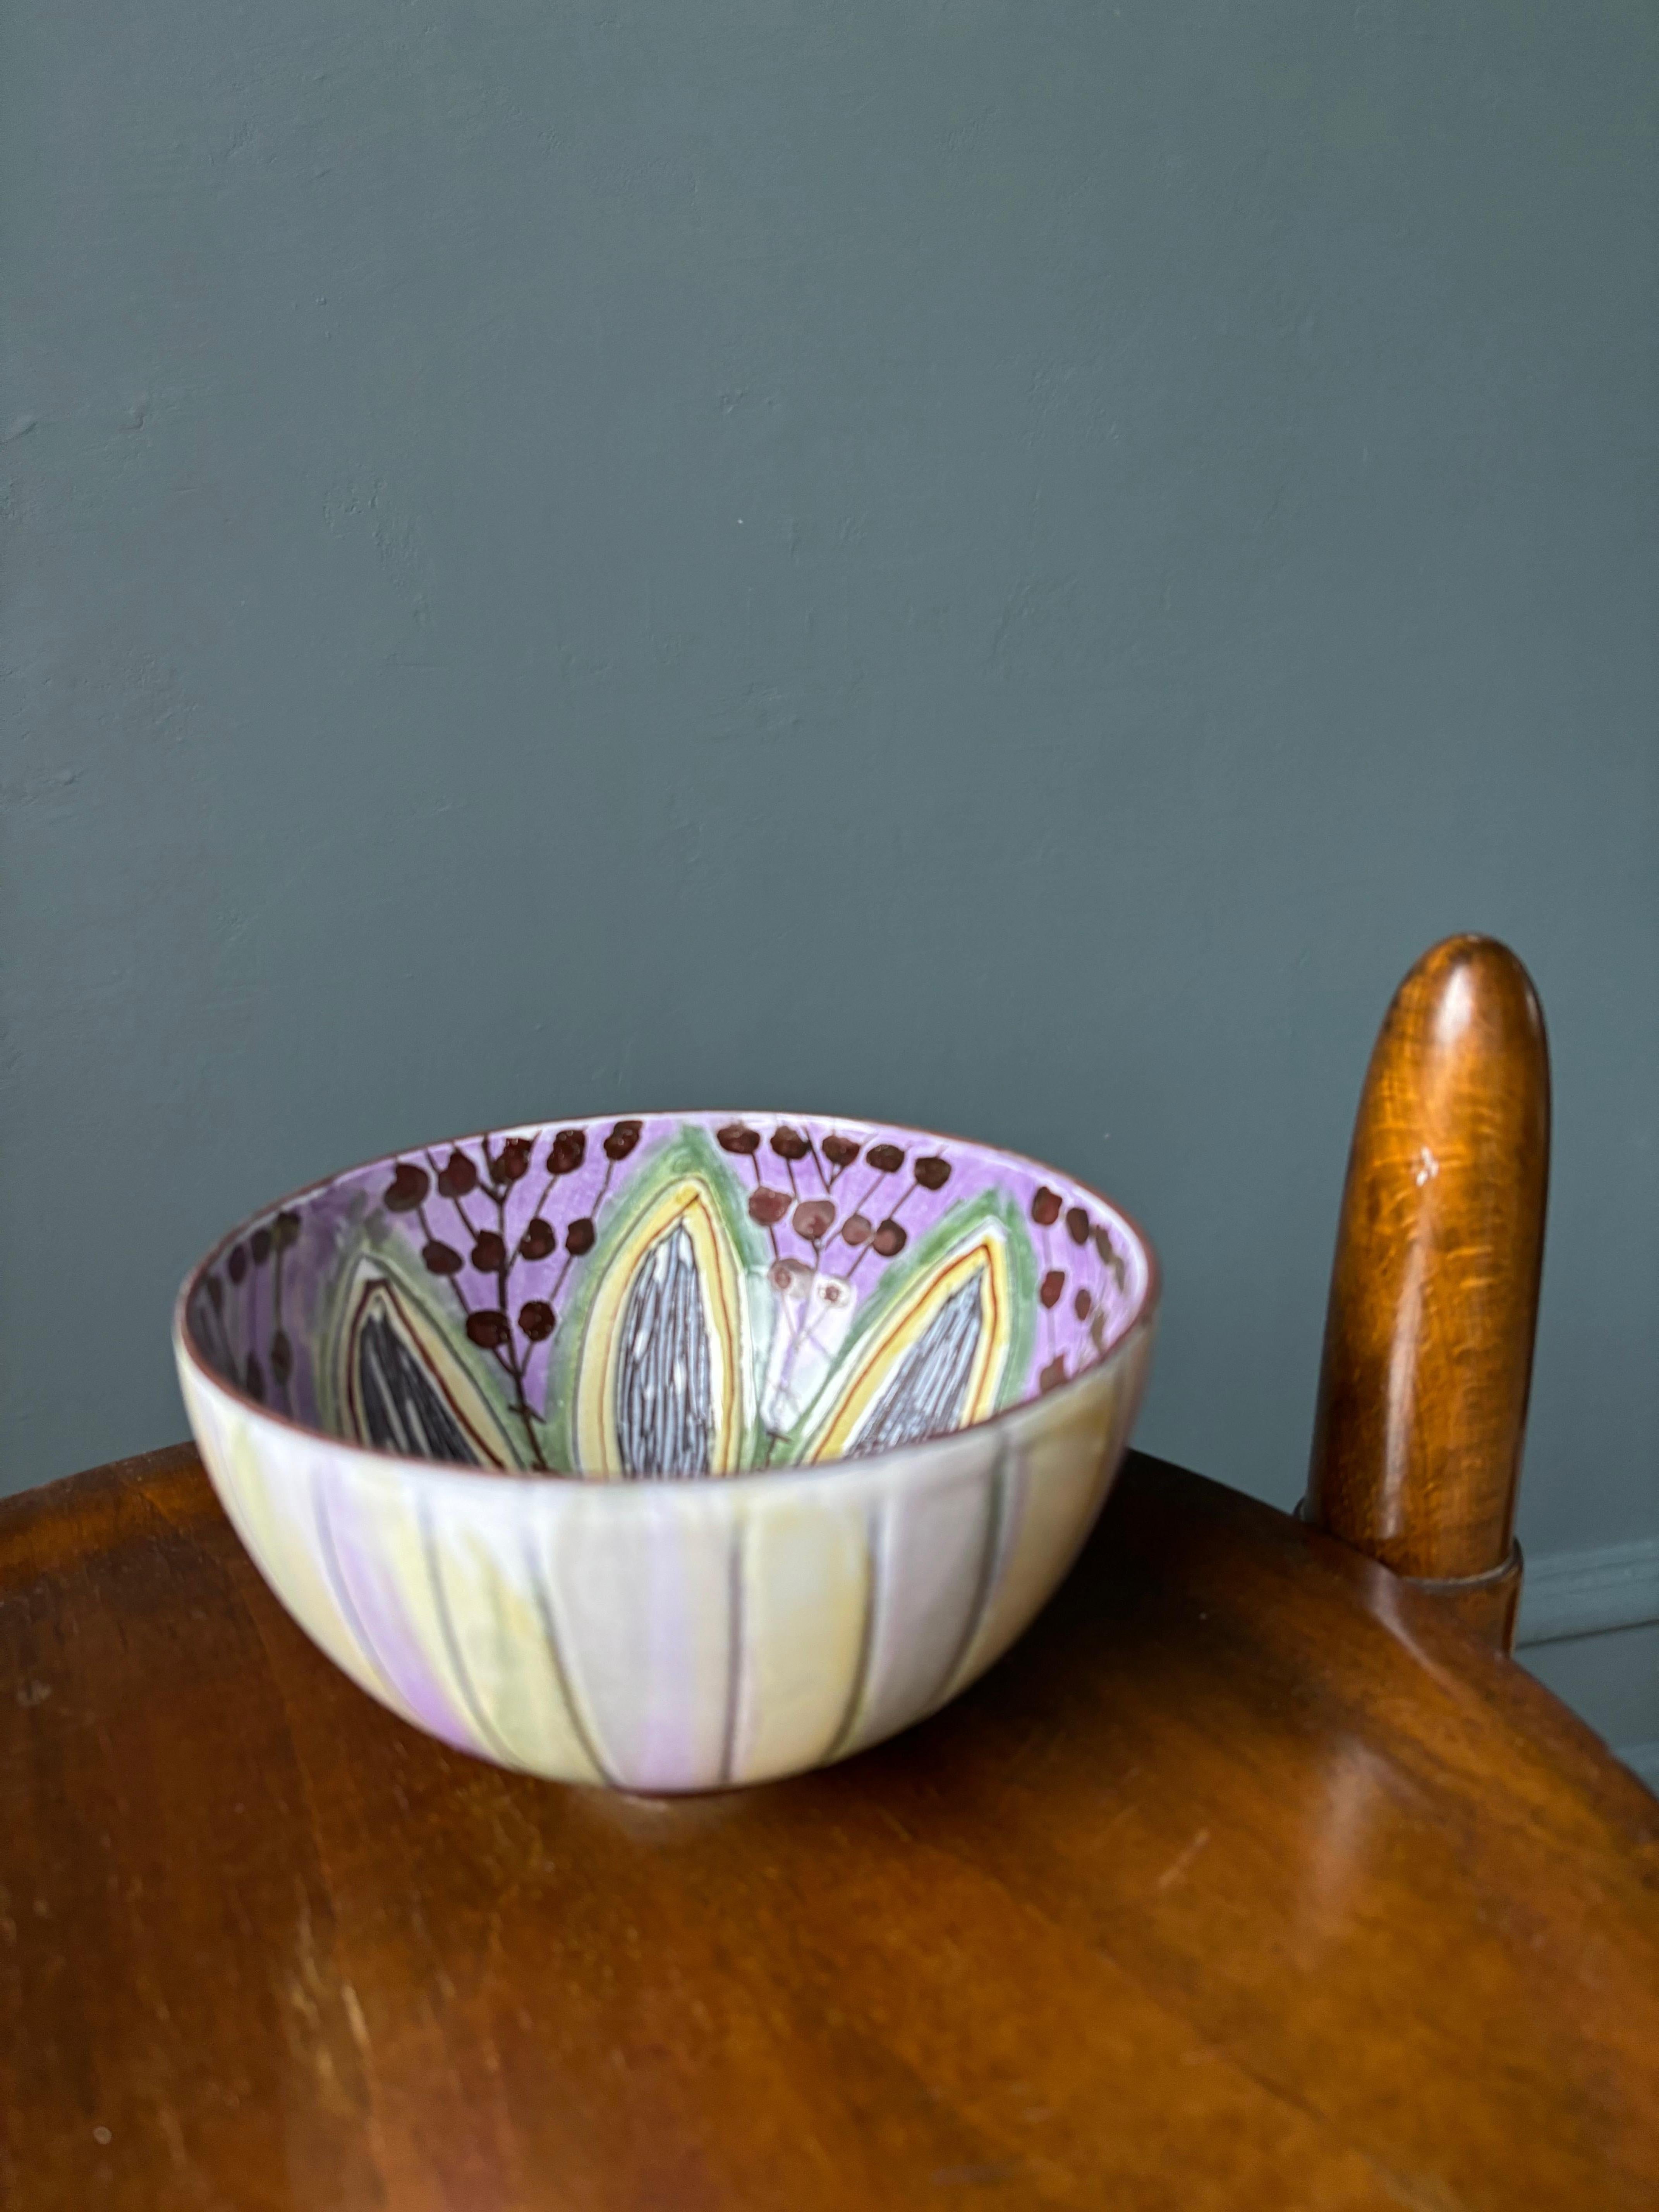 Handbemalte, mehrfarbige, dekorative Keramikschüssel der skandinavischen Moderne, hergestellt von Laholm in den 1960er Jahren. Zarte pastellfarbene Streifen auf der Außenseite und stilisierte Blütenblätter, Punkte und Linien auf der Innenseite in